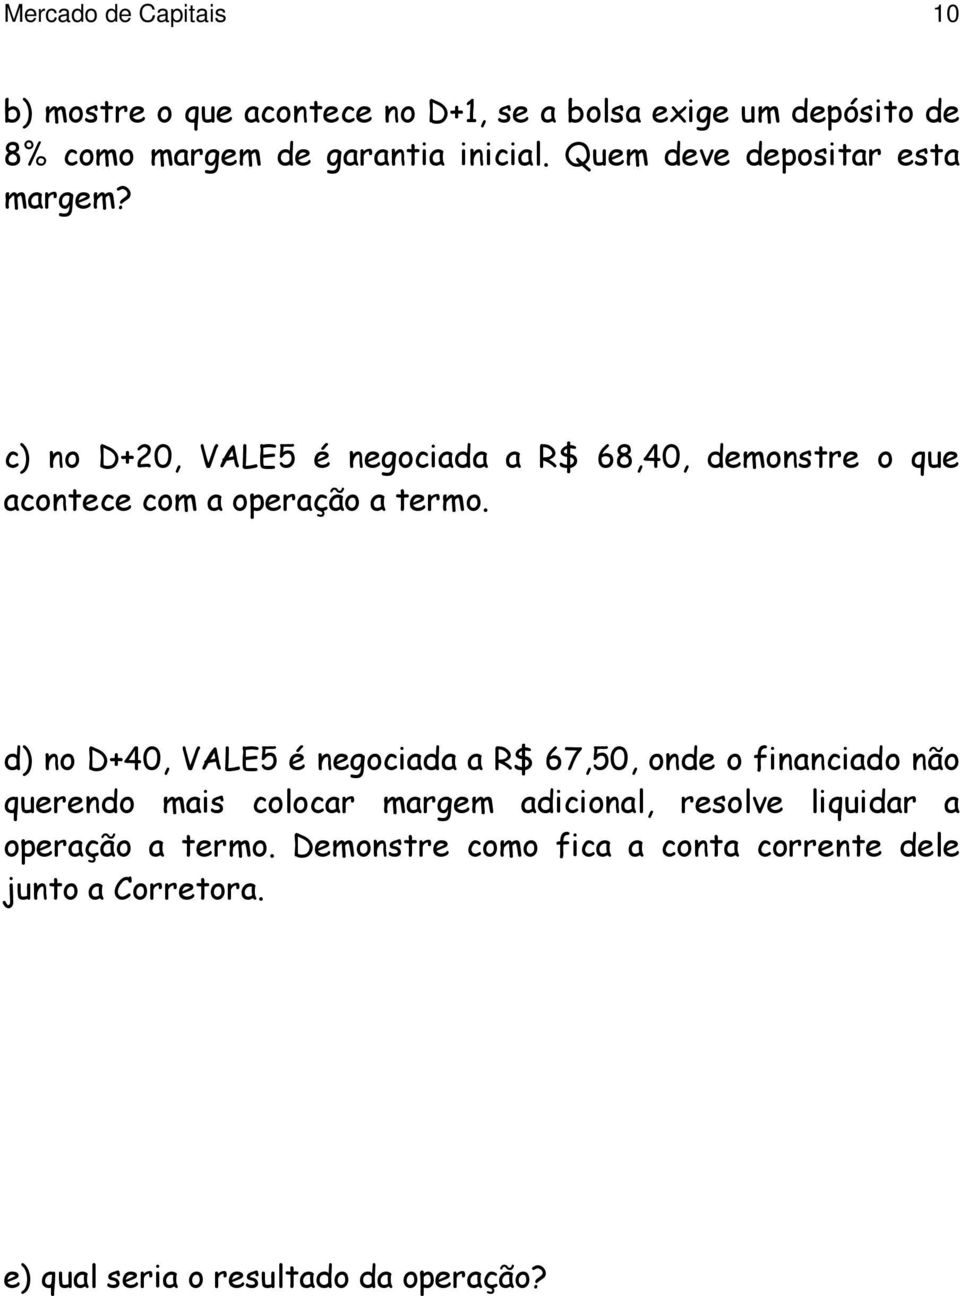 c) no D+20, VALE5 é negociada a R$ 68,40, demonstre o que acontece com a operação a termo.